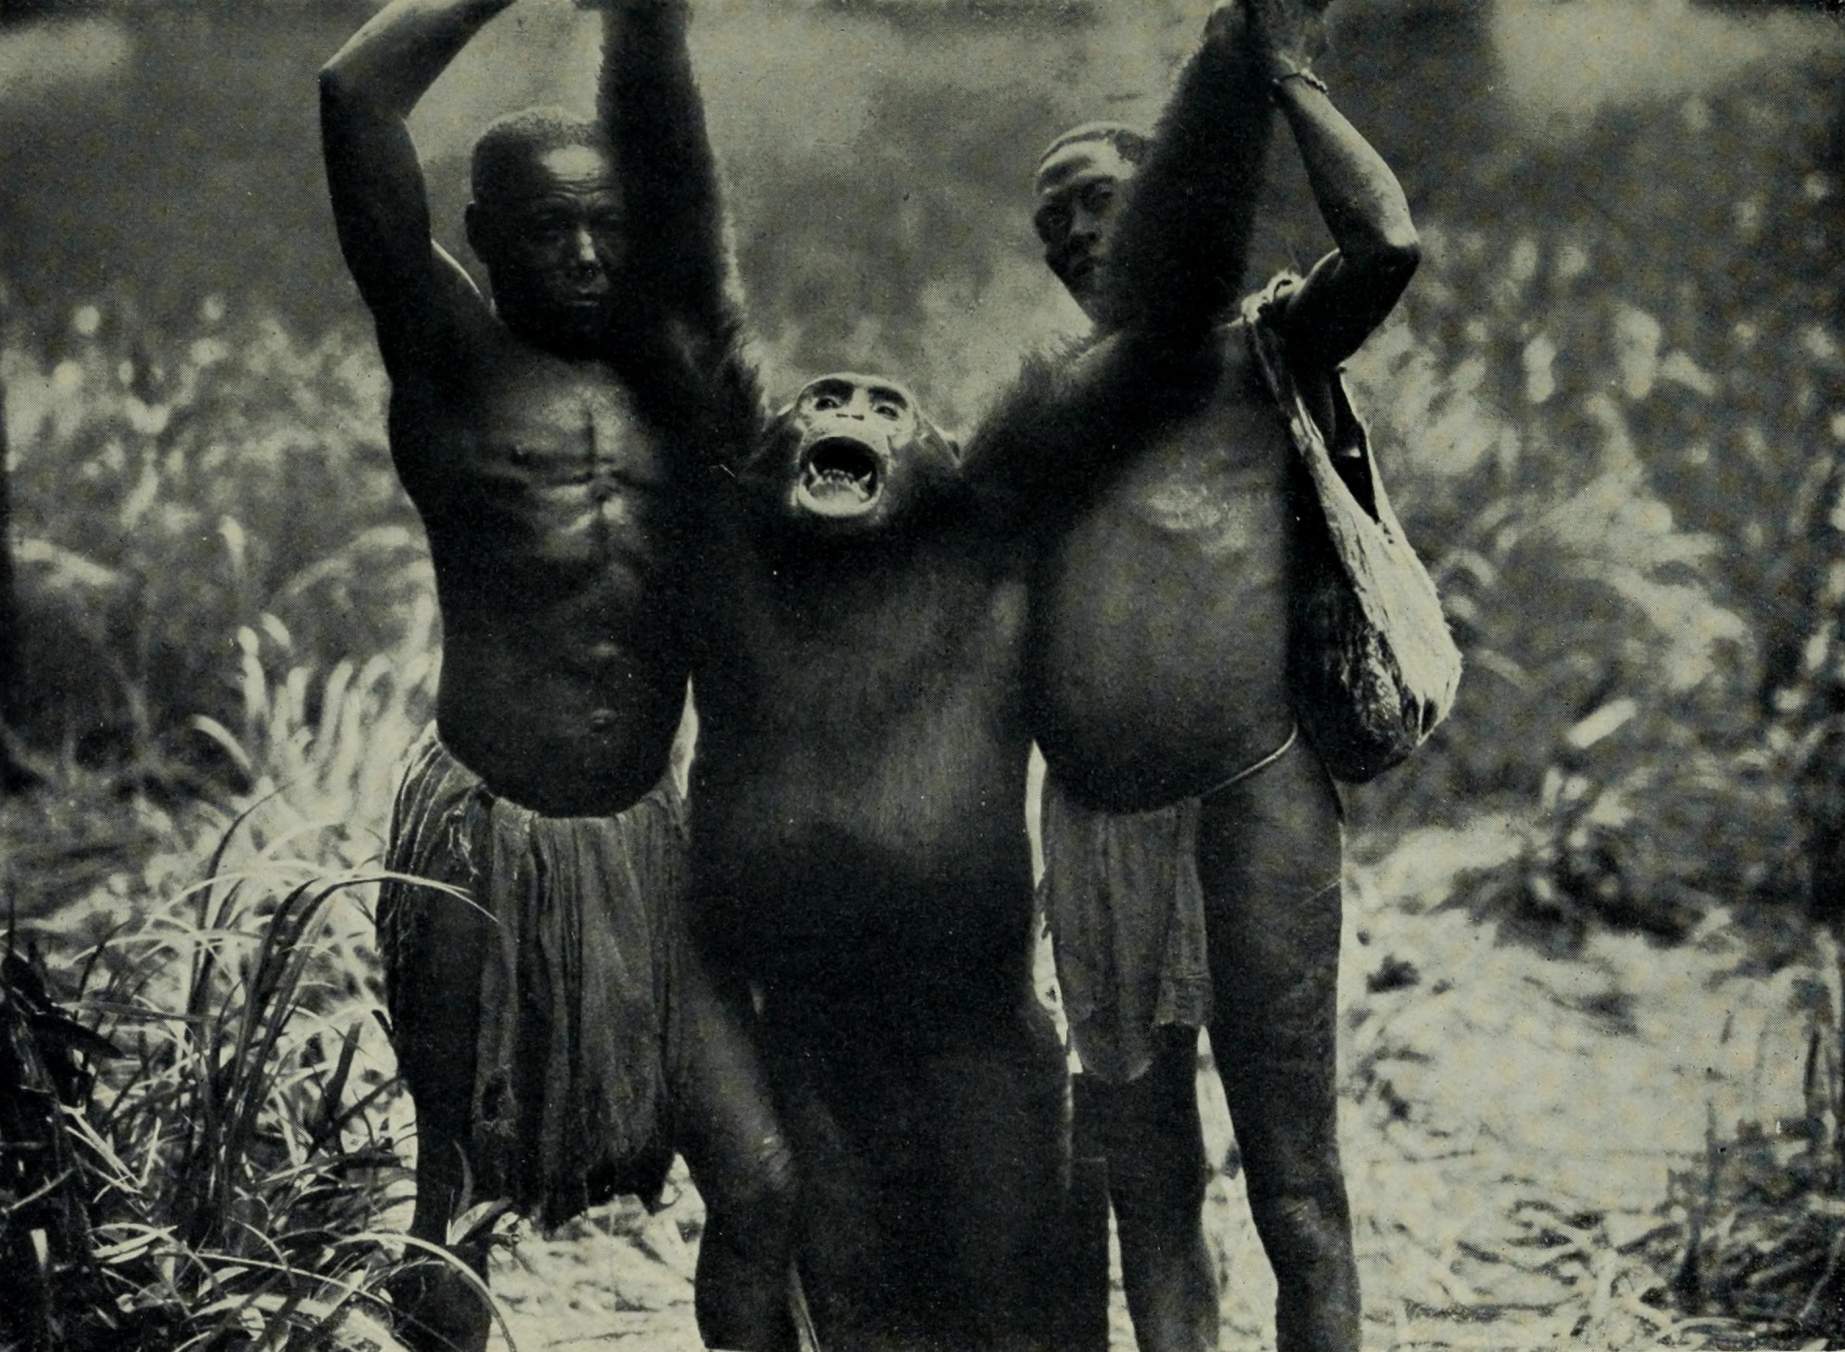 Un chimpancé gigante, asesinado por el explorador alemán ainvon Wiese en el Congo durante su expedición (1910-1911). Wikimedia Commons